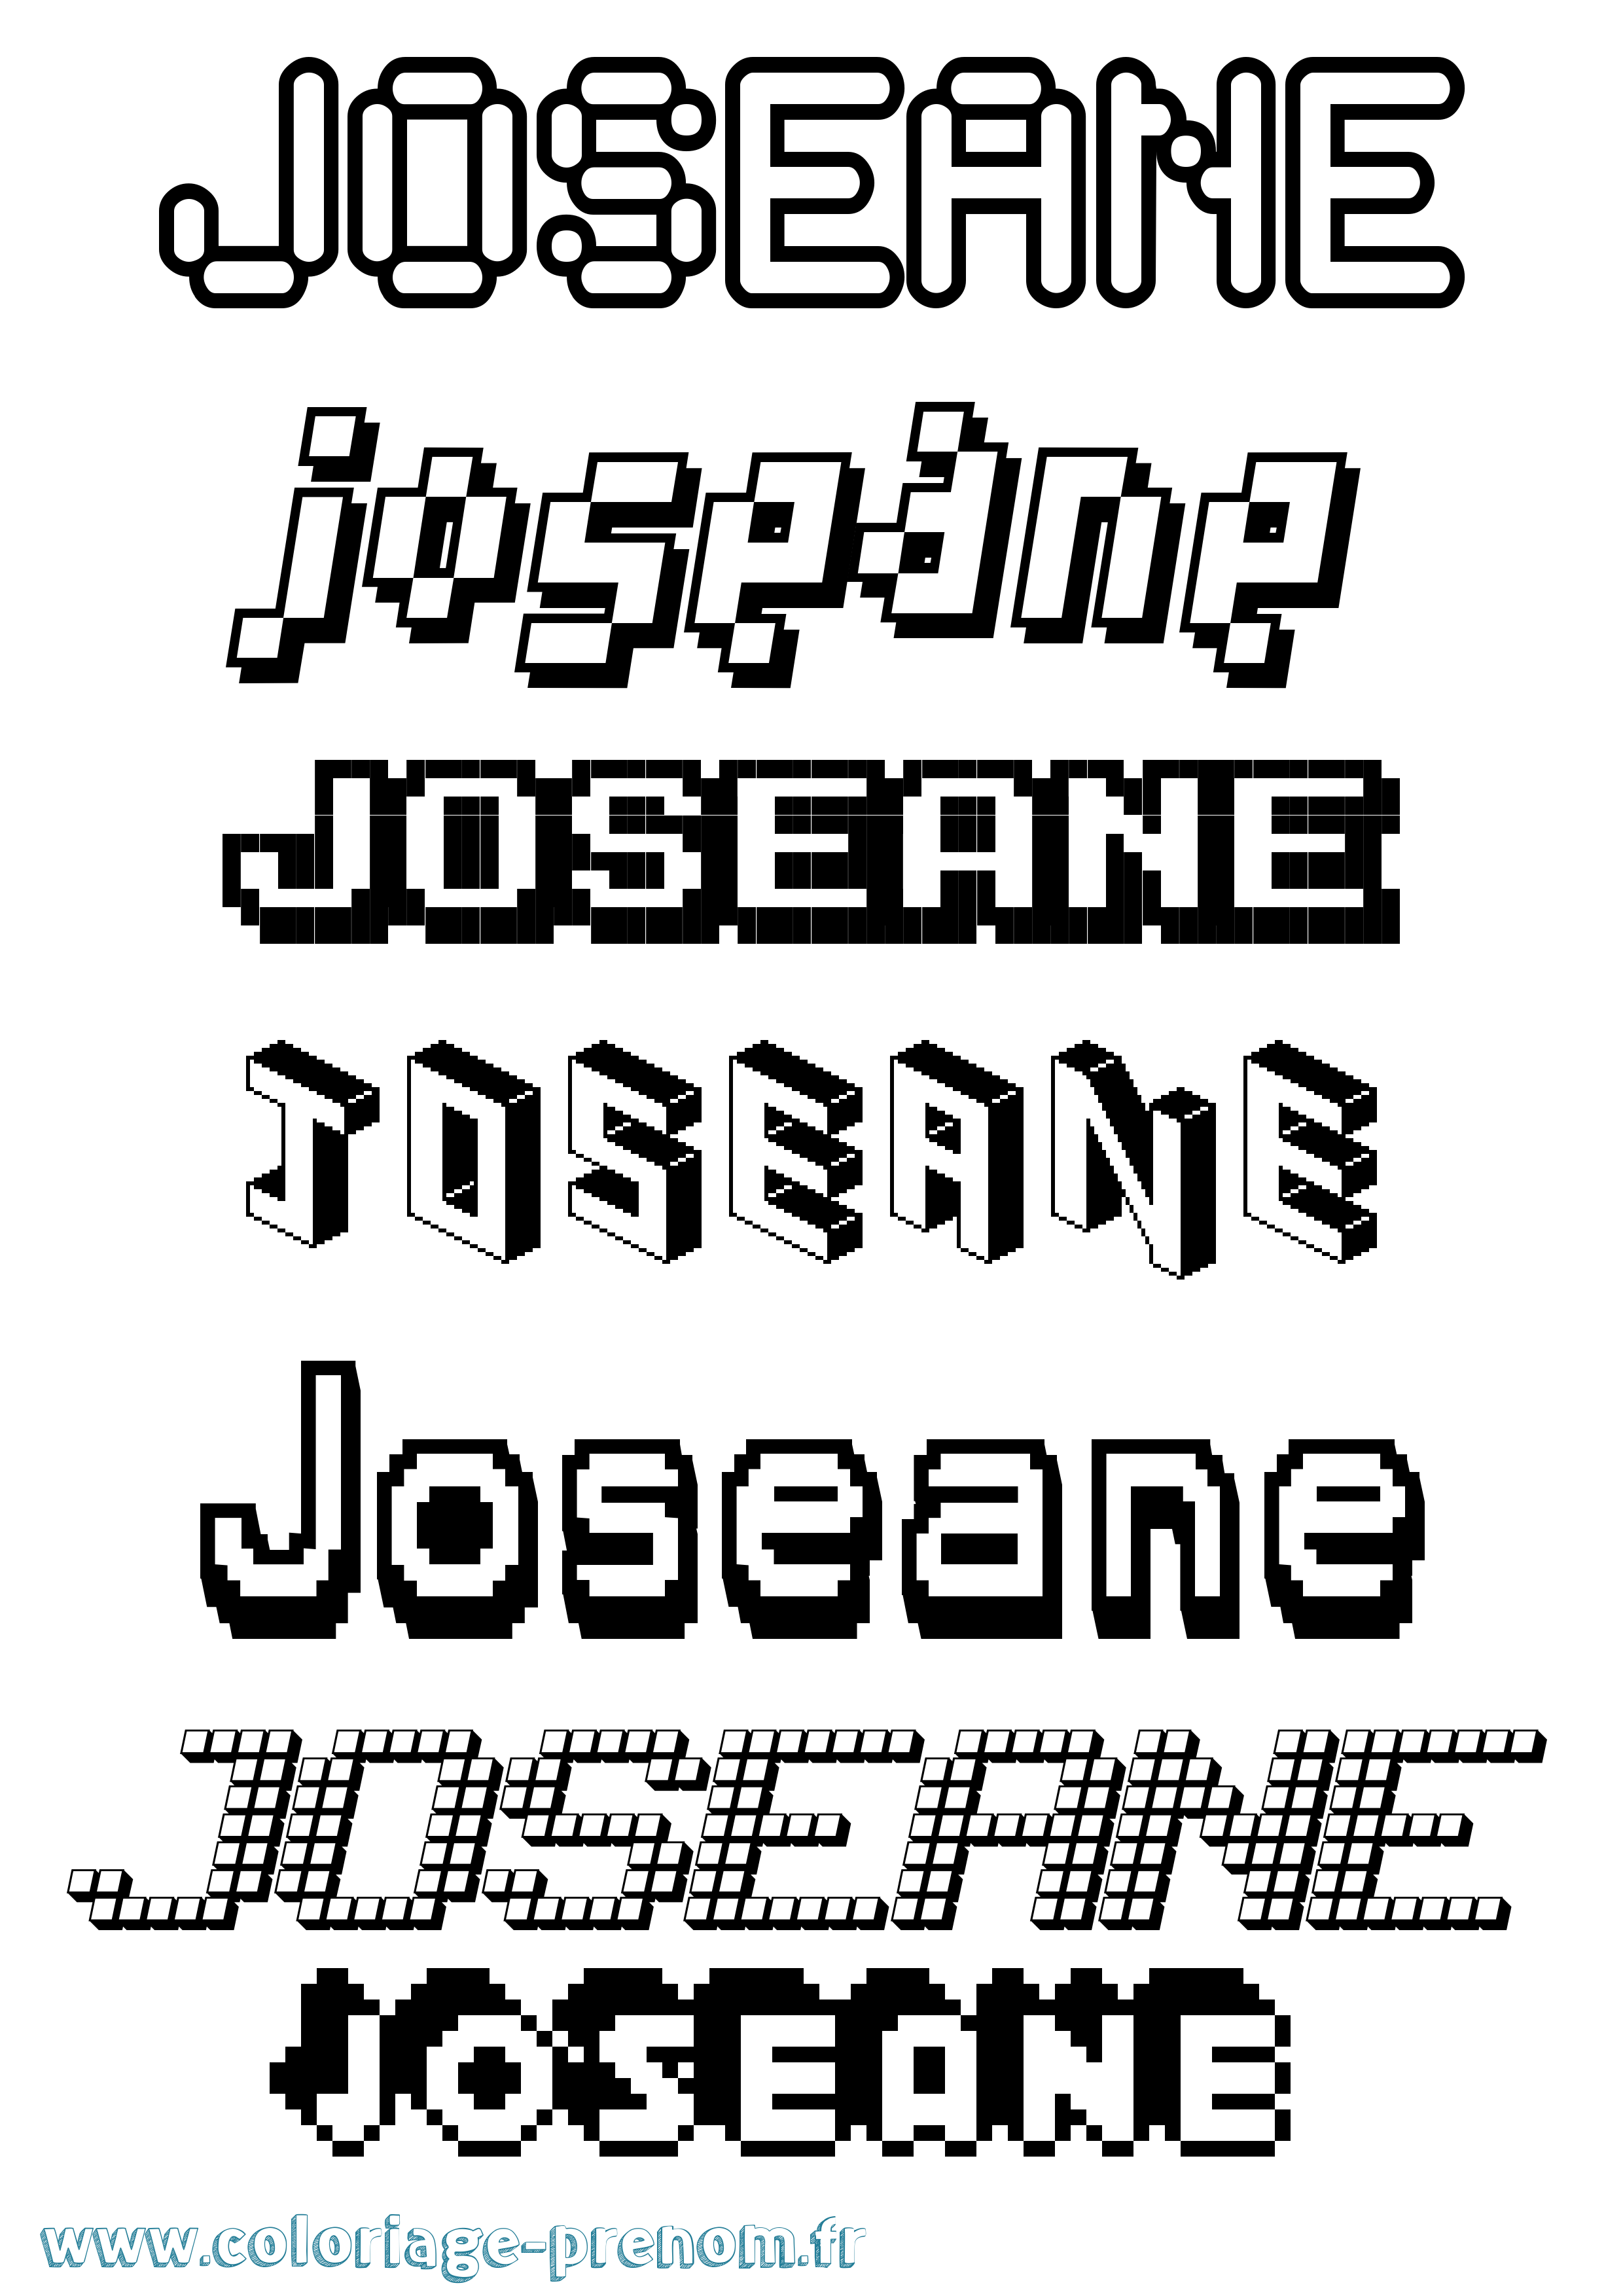 Coloriage prénom Joseane Pixel